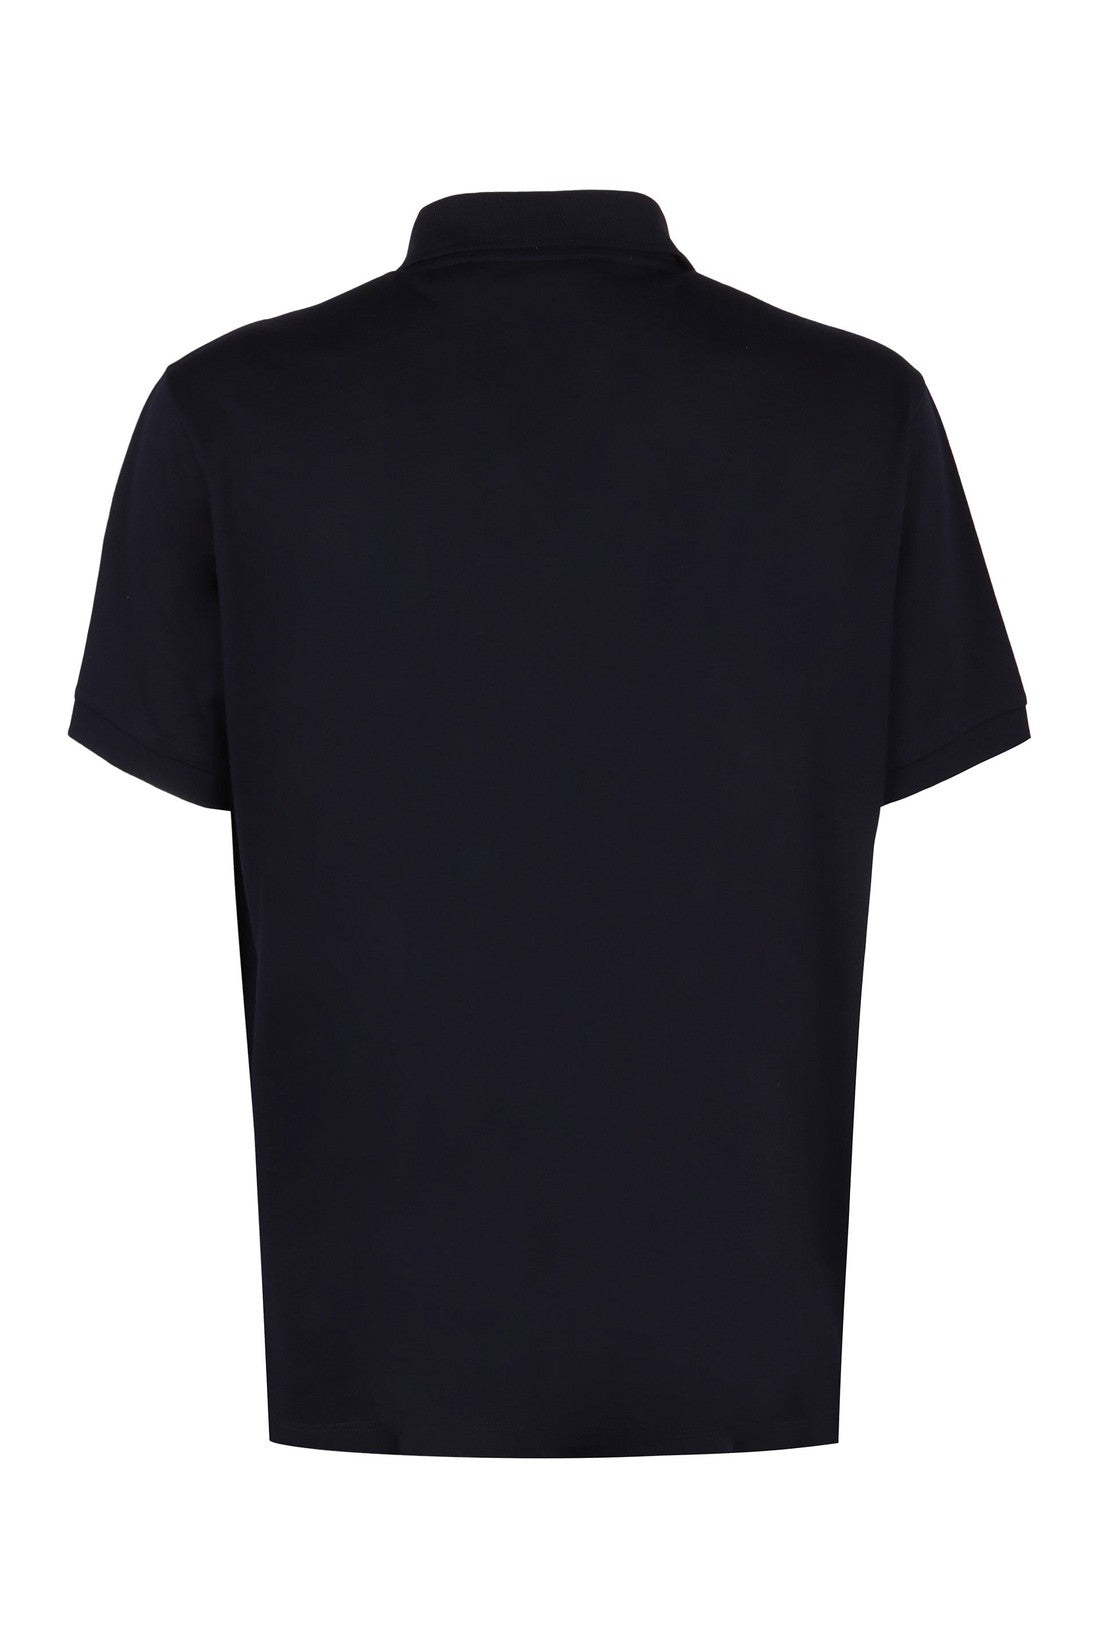 Paul Smith-OUTLET-SALE-Cotton-piqué polo shirt-ARCHIVIST